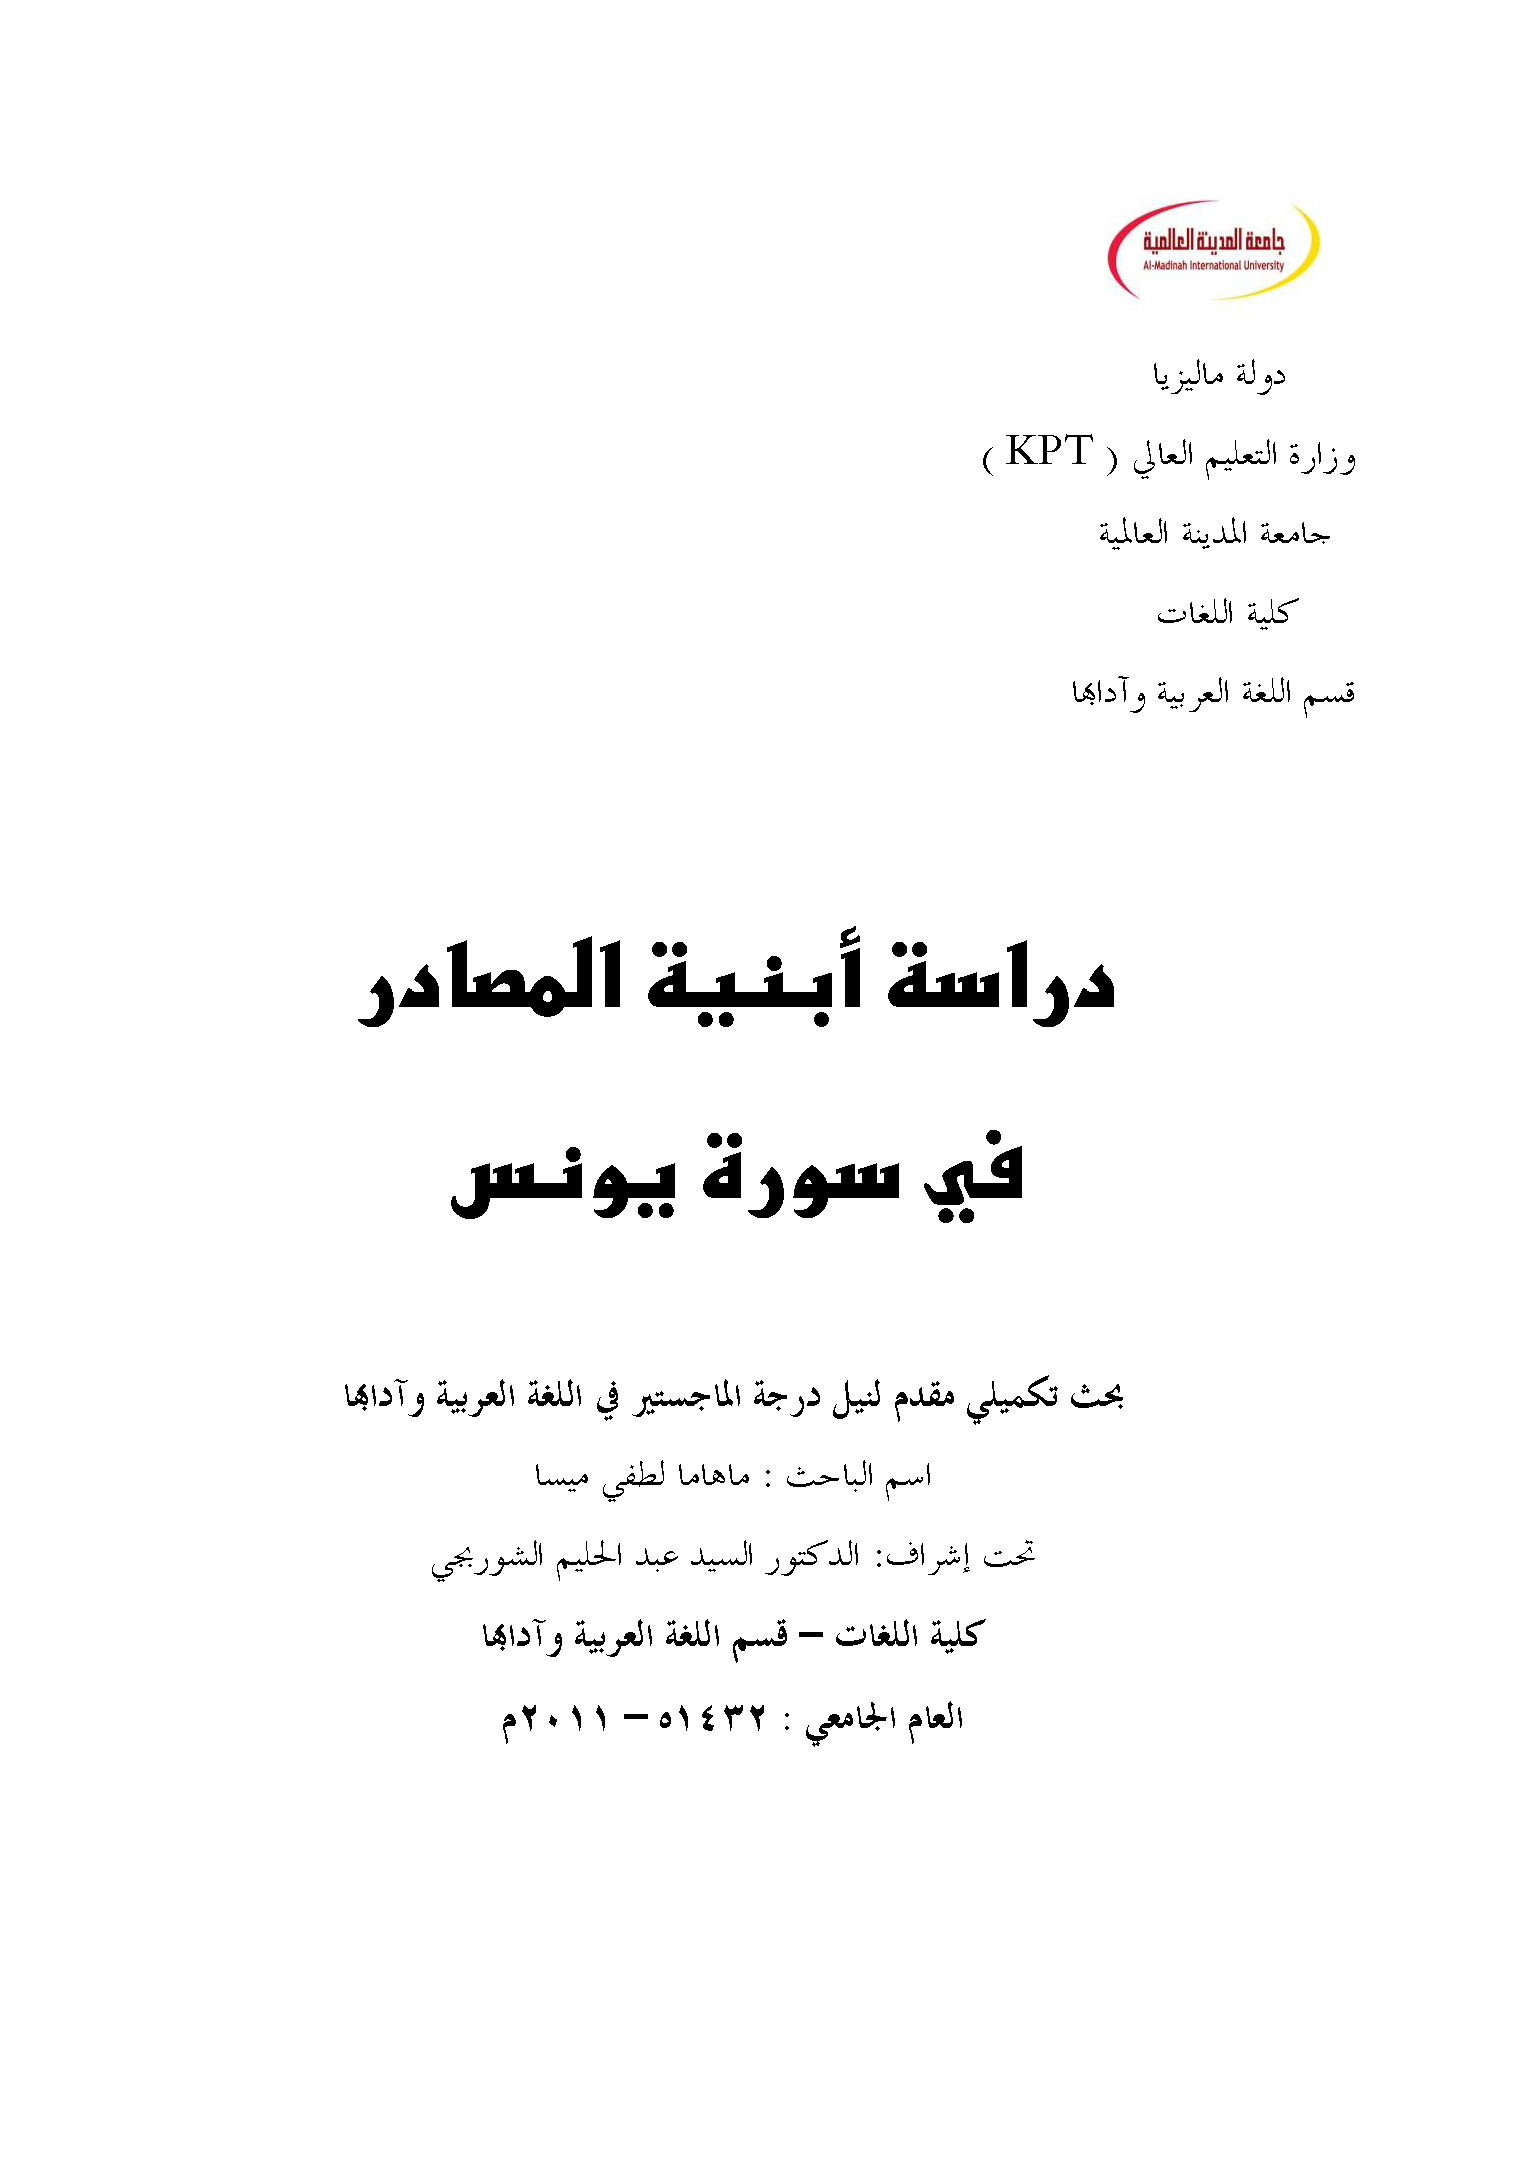 تحميل كتاب دراسة أبنية المصادر في سورة يونس لـِ: مهاما لطفي ميسا